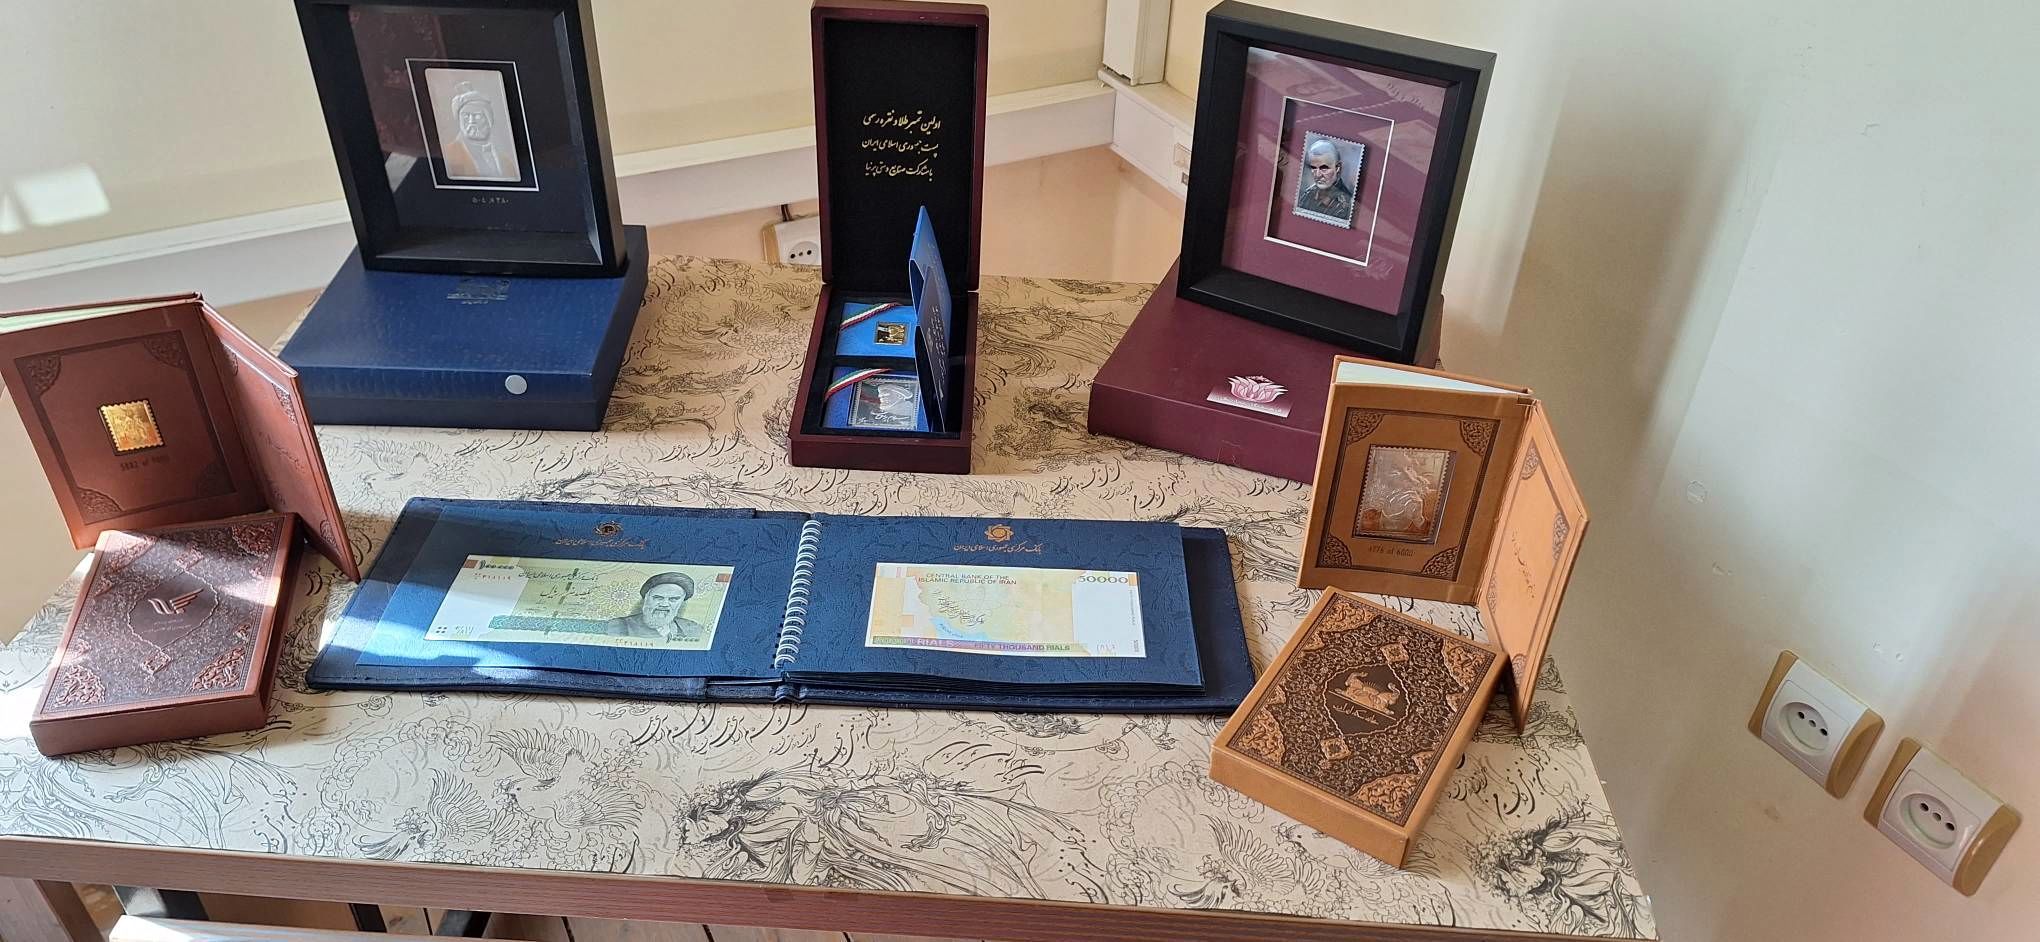 افتتاح نمایشگاه تمبر یادبود در رشت